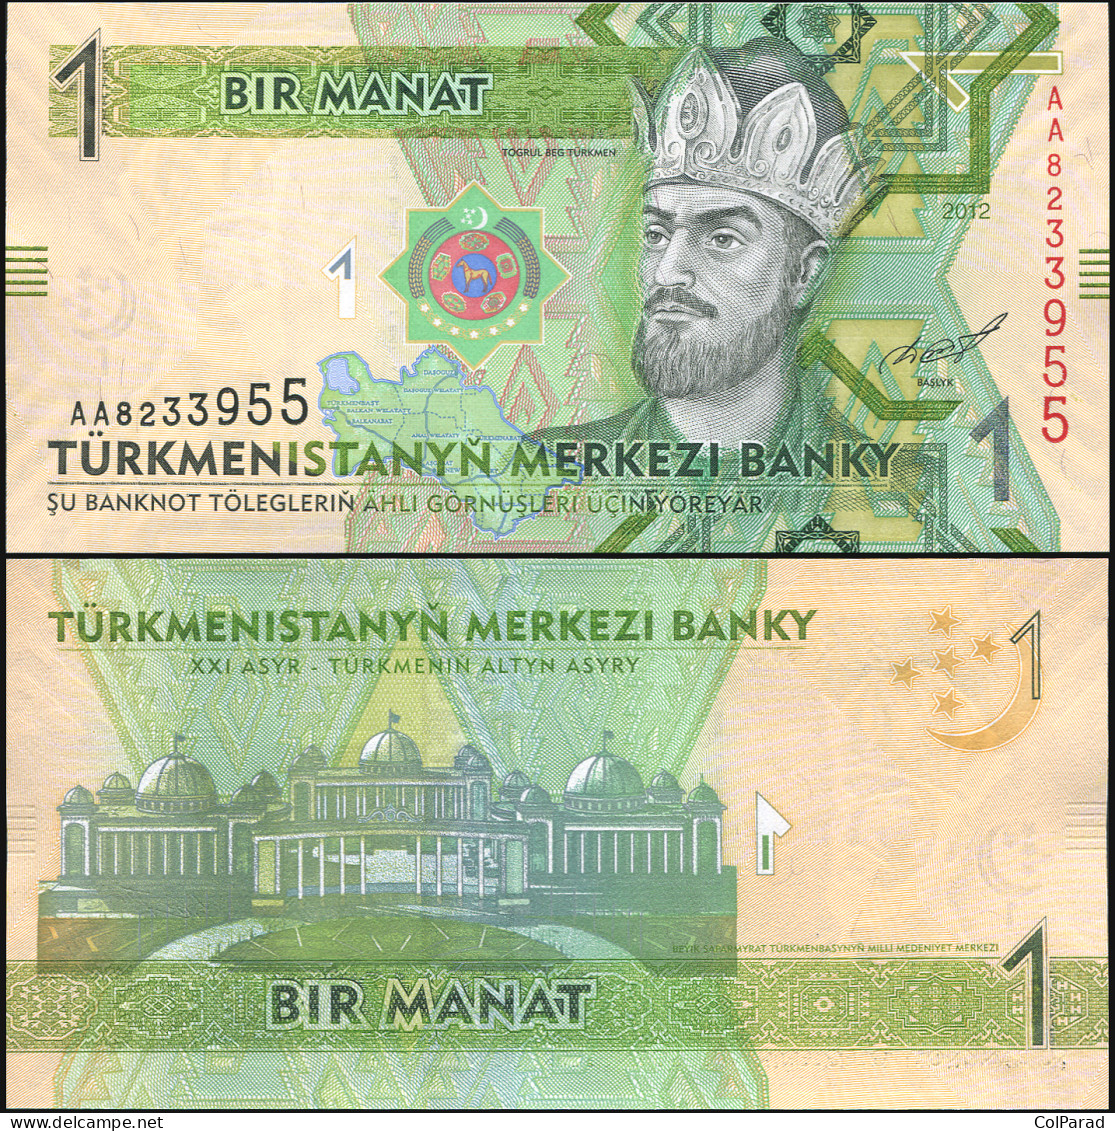 TURKMENISTAN 1 MANAT - 2012 - Unc - P.29a Paper Banknote - Turkmenistán